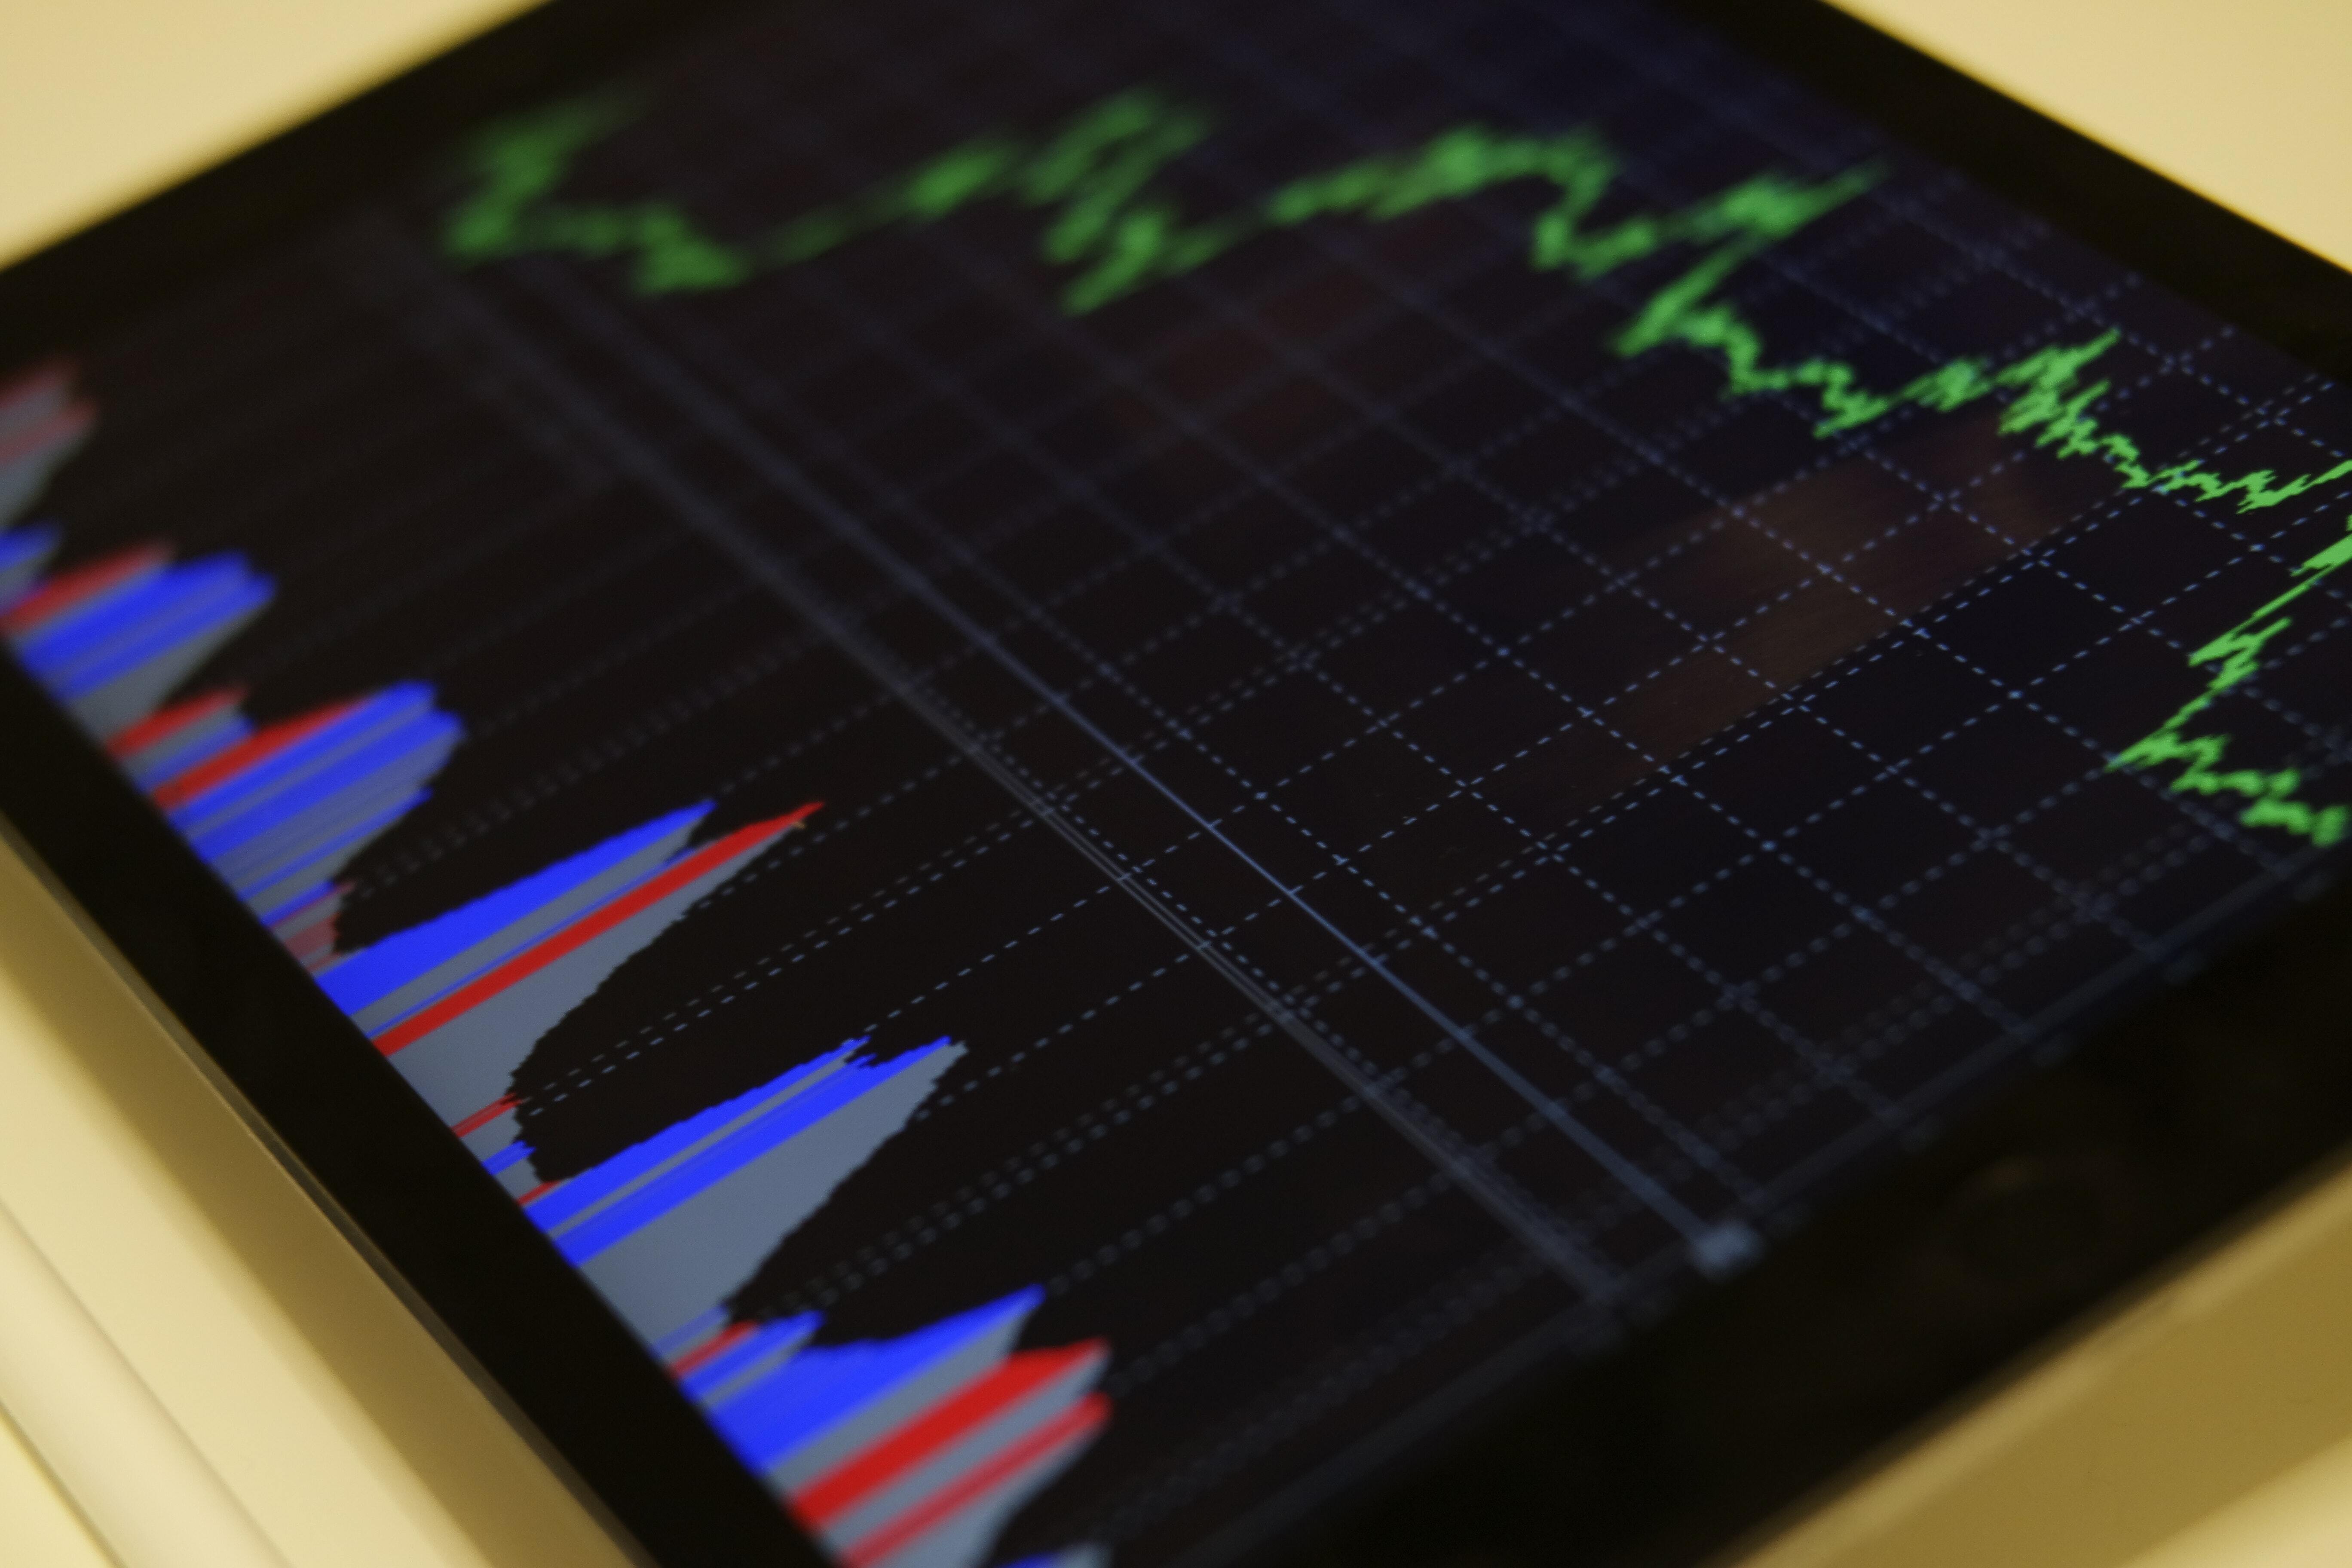 Stock market tracker on tablet